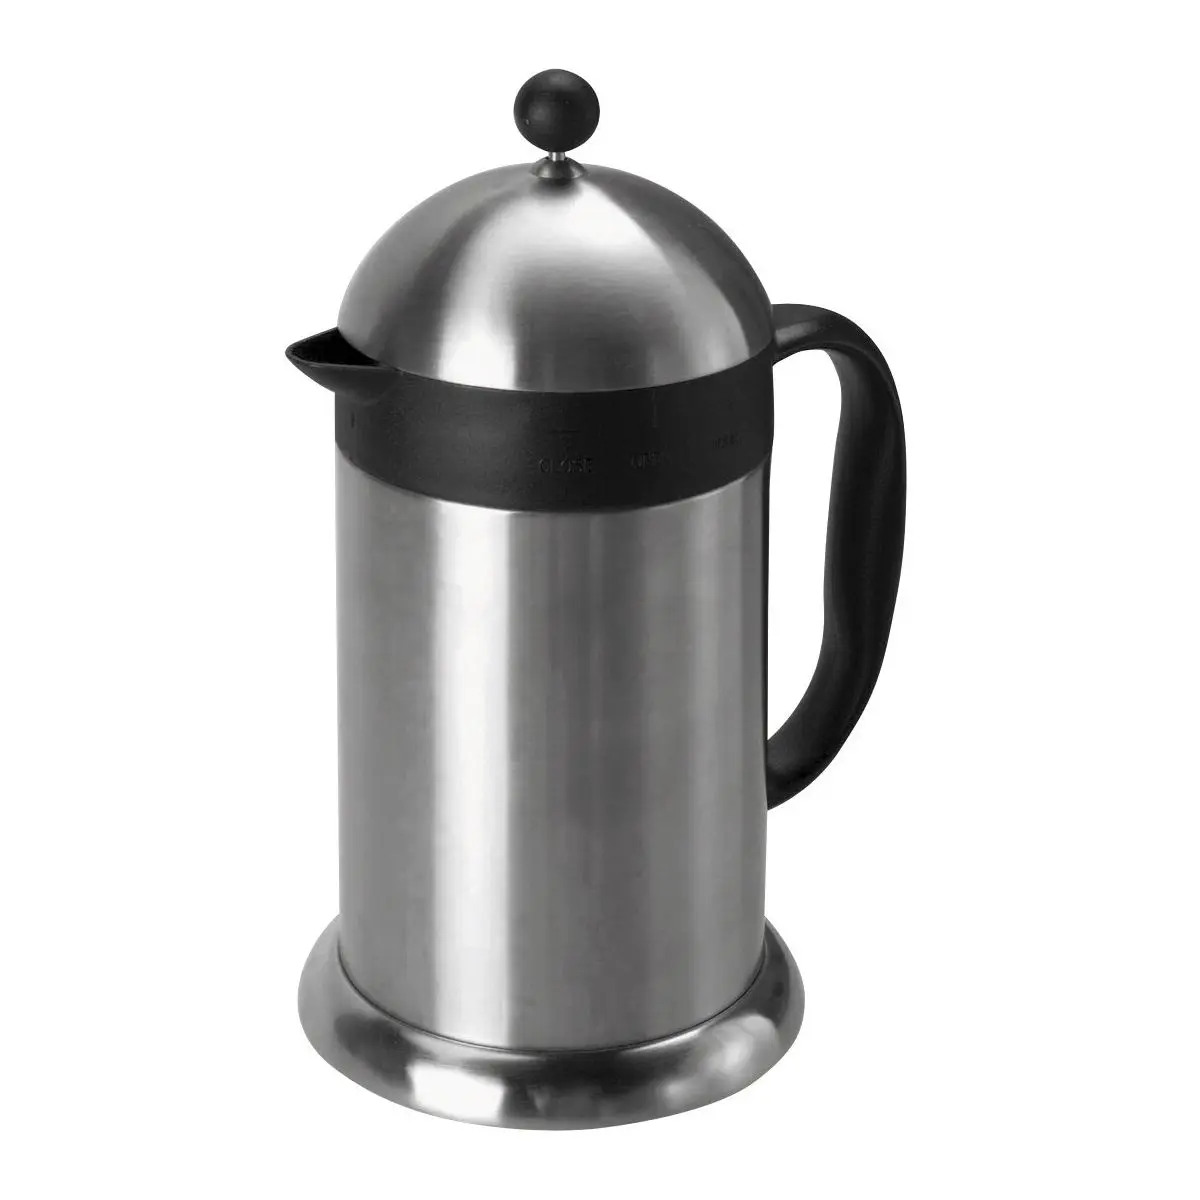 Kávovar Rio - 1 liter